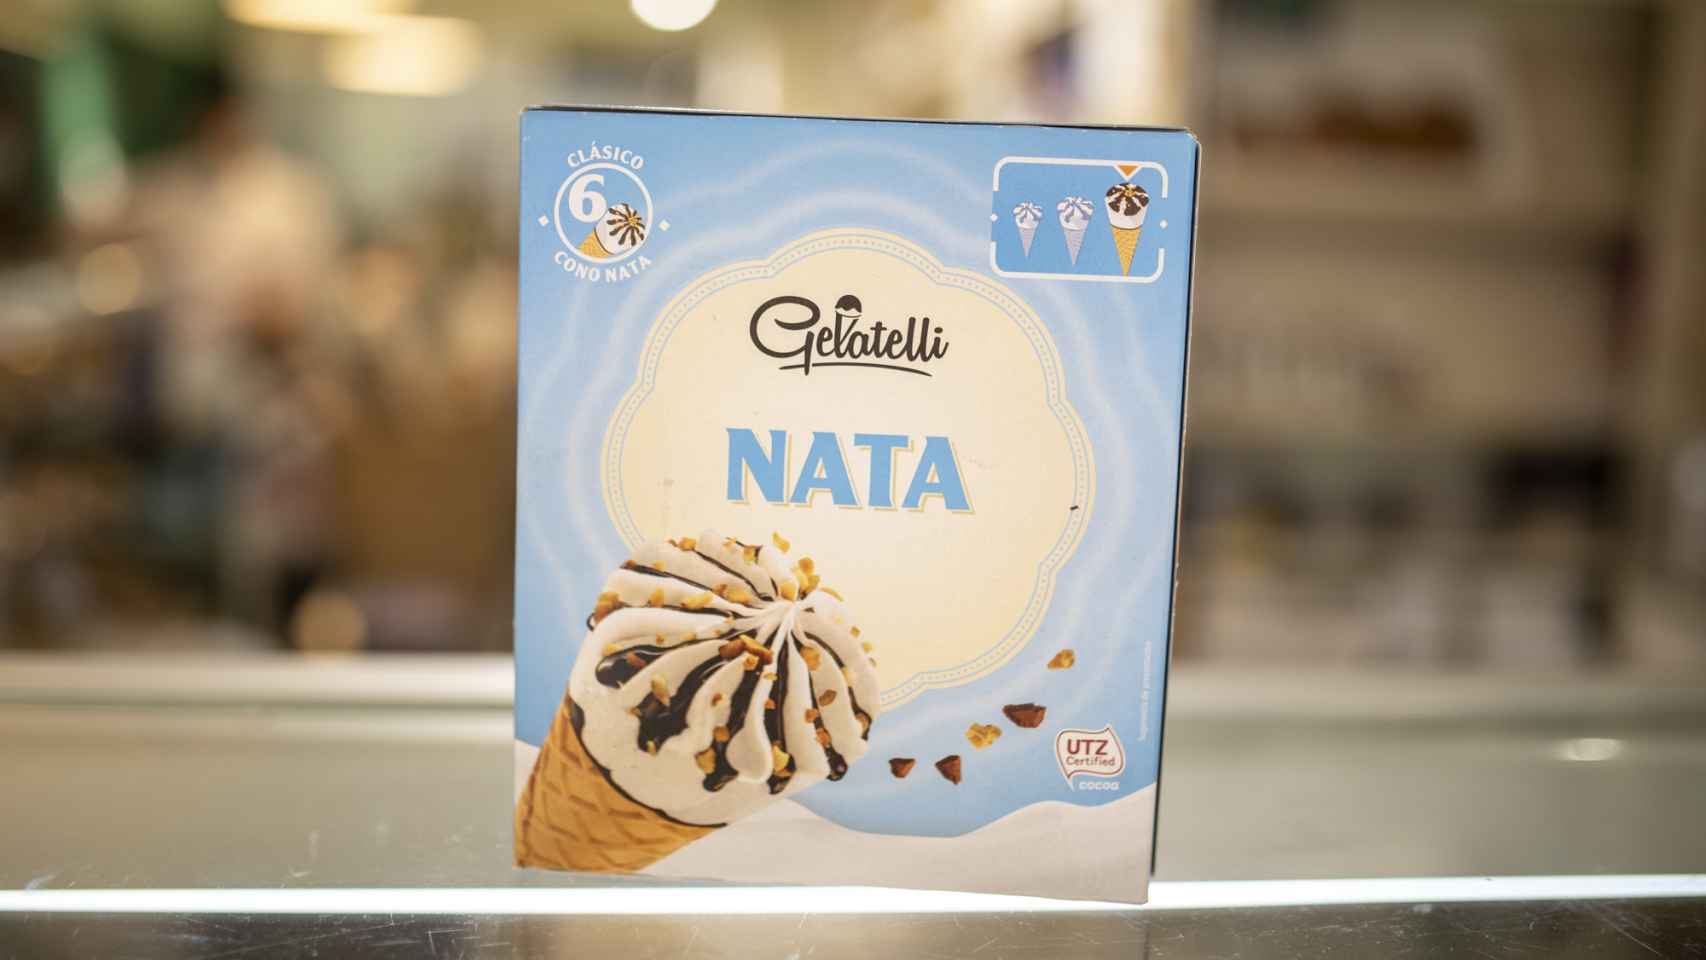 La caja de conos de nata de Gelatelli, la marca blanca de Lidl.